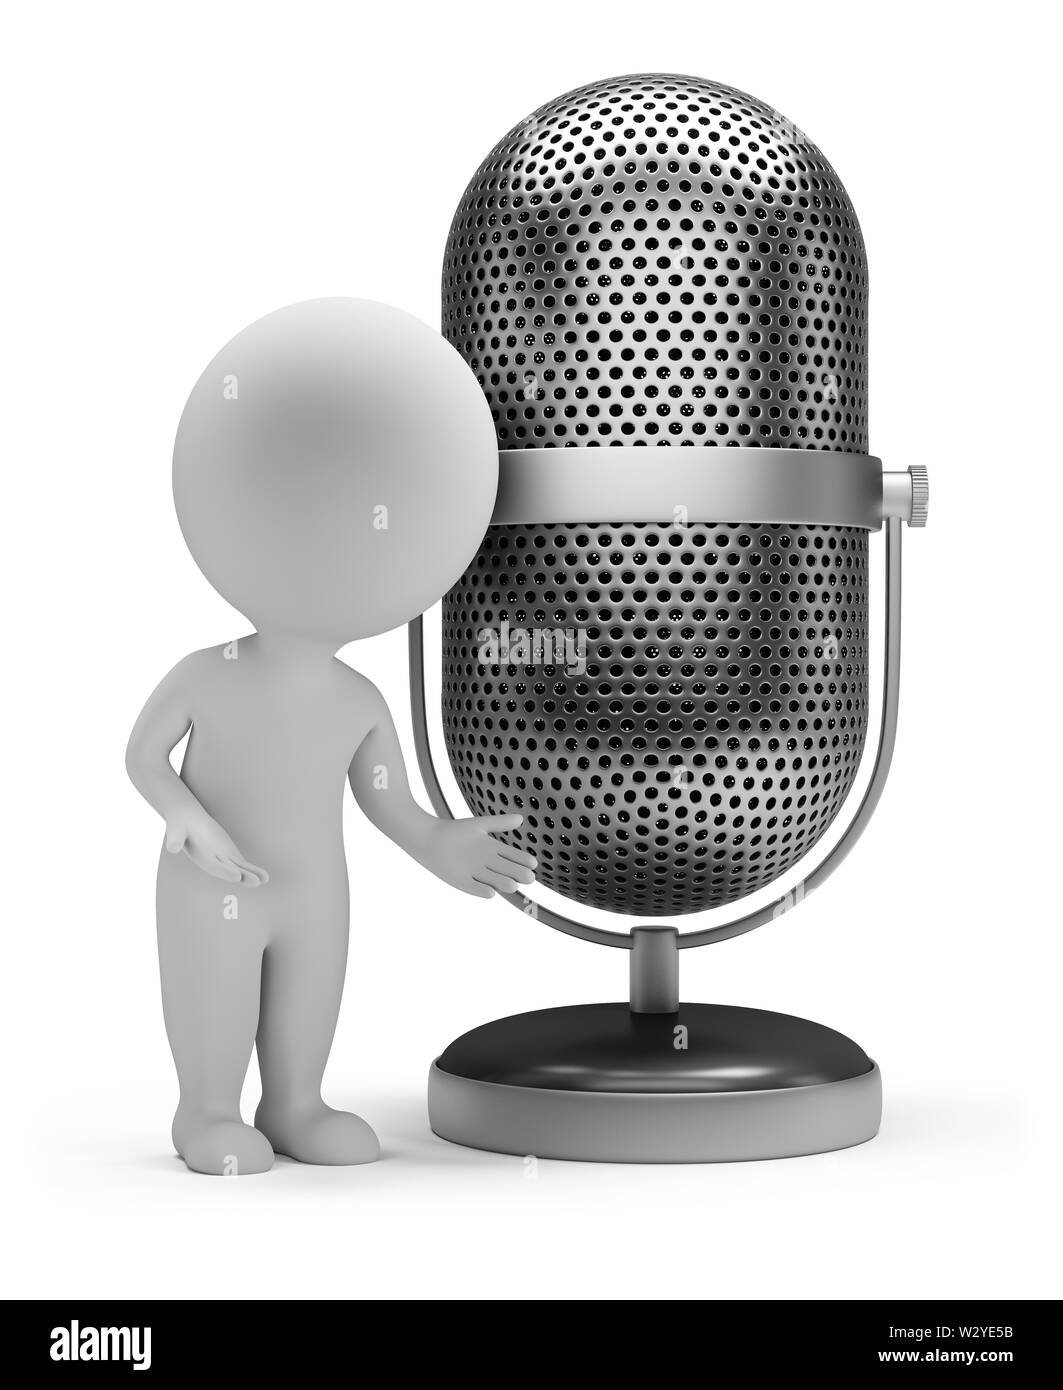 3d piccola persona in piedi accanto a un microfono vintage. Immagine 3d. Isolato sullo sfondo bianco. Foto Stock